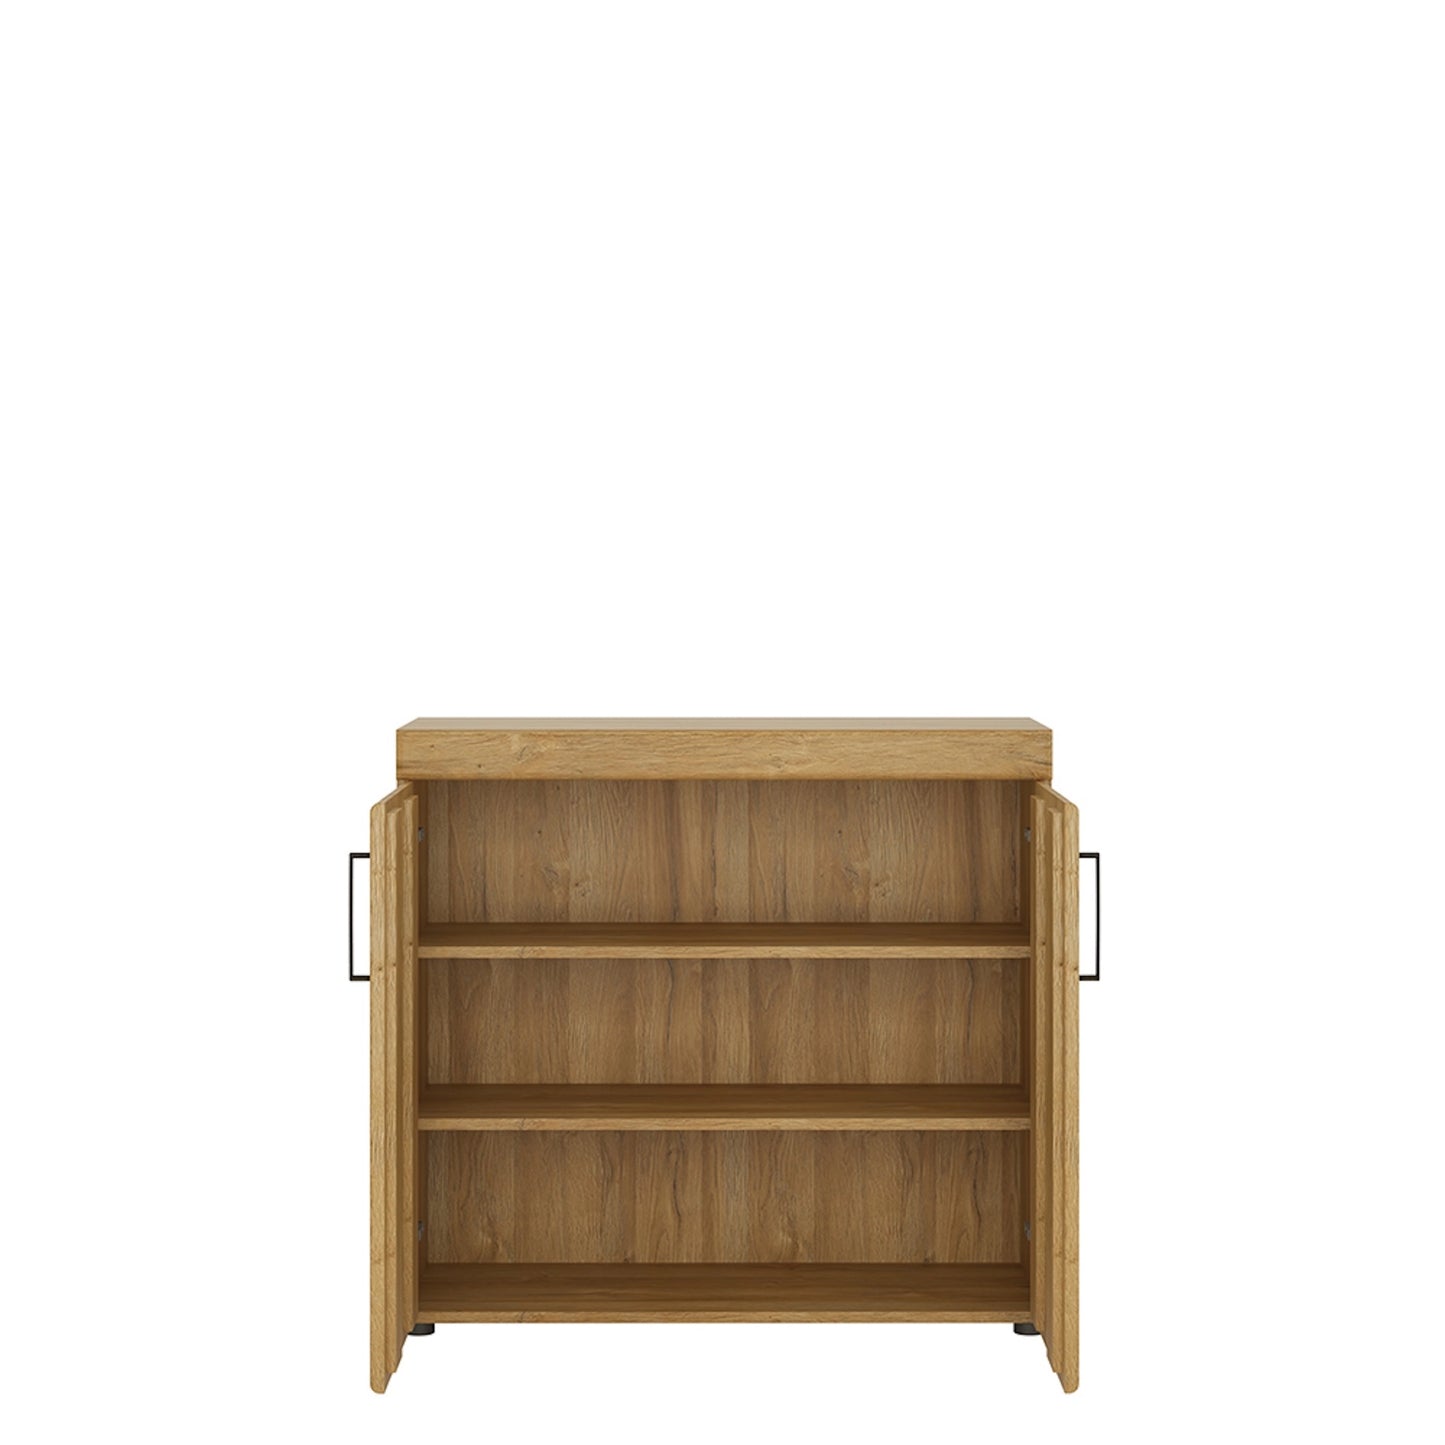 Furniture To Go Cortina 2 Door Cabinet in Grandson Oak